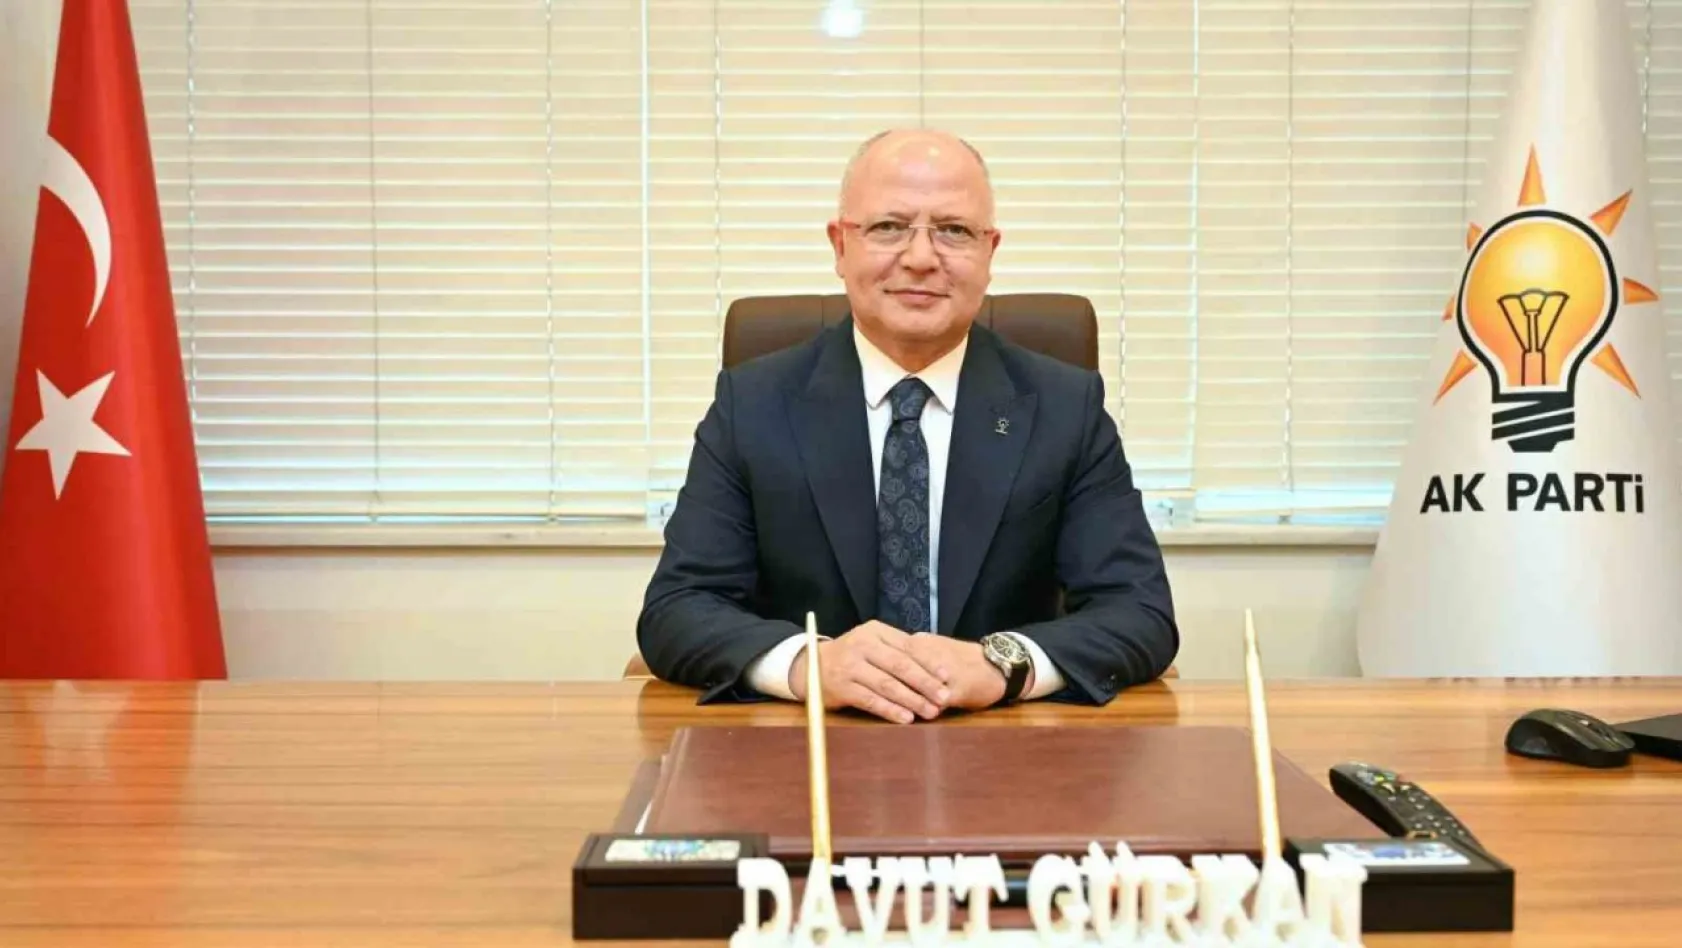 AK Parti Bursa İl Başkanı Davut Gürkan: 'Leyle-i Kadirimiz mübarek olsun'